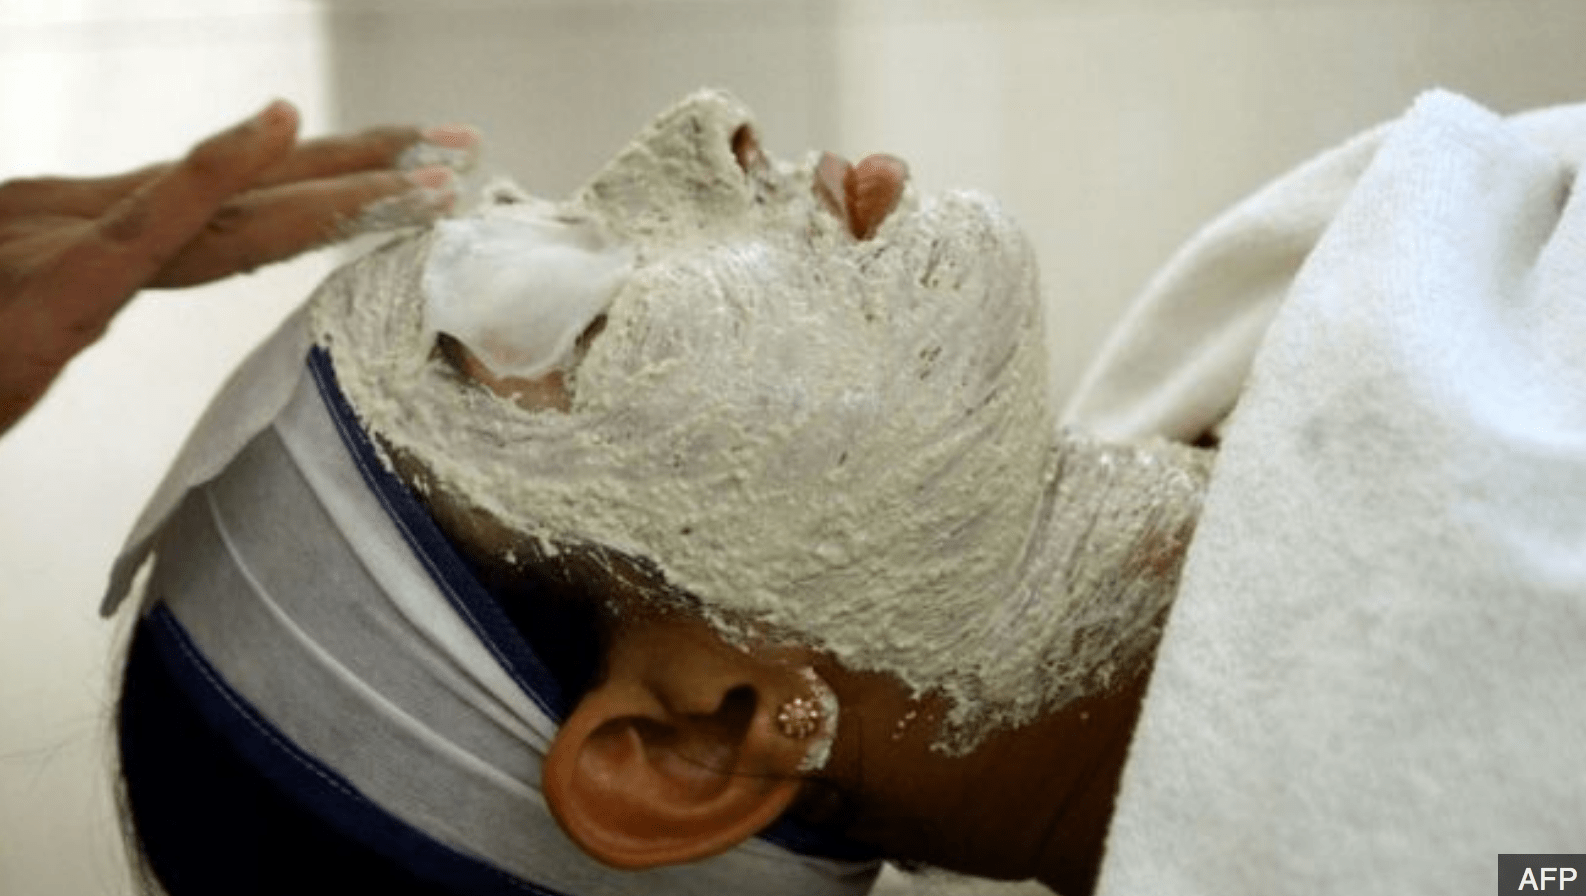 Los tratamientos faciales y blanqueadores frecuentemente se conocen como "limpieza" de color. (Foto Prensa Libre: AFP)